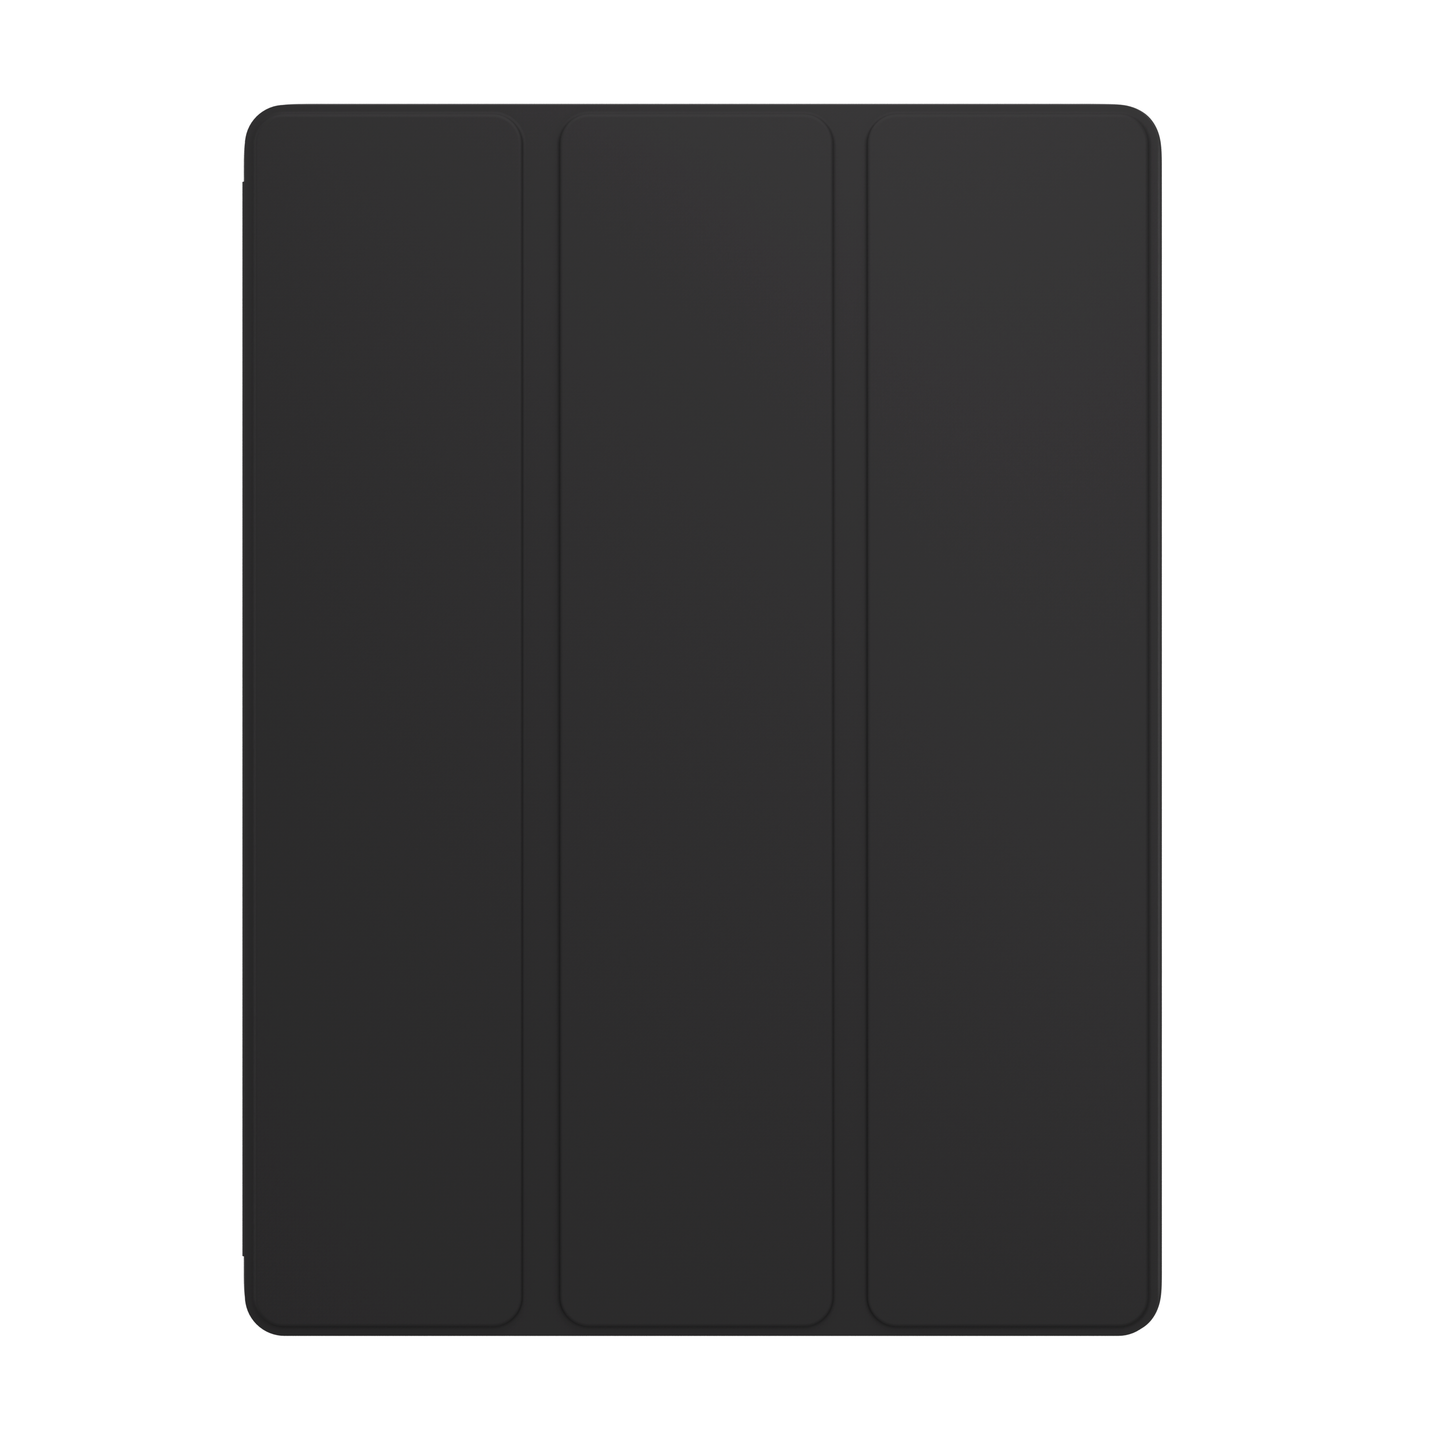 NEXT.ONE Roll case für iPad 10,9" - Schwarz